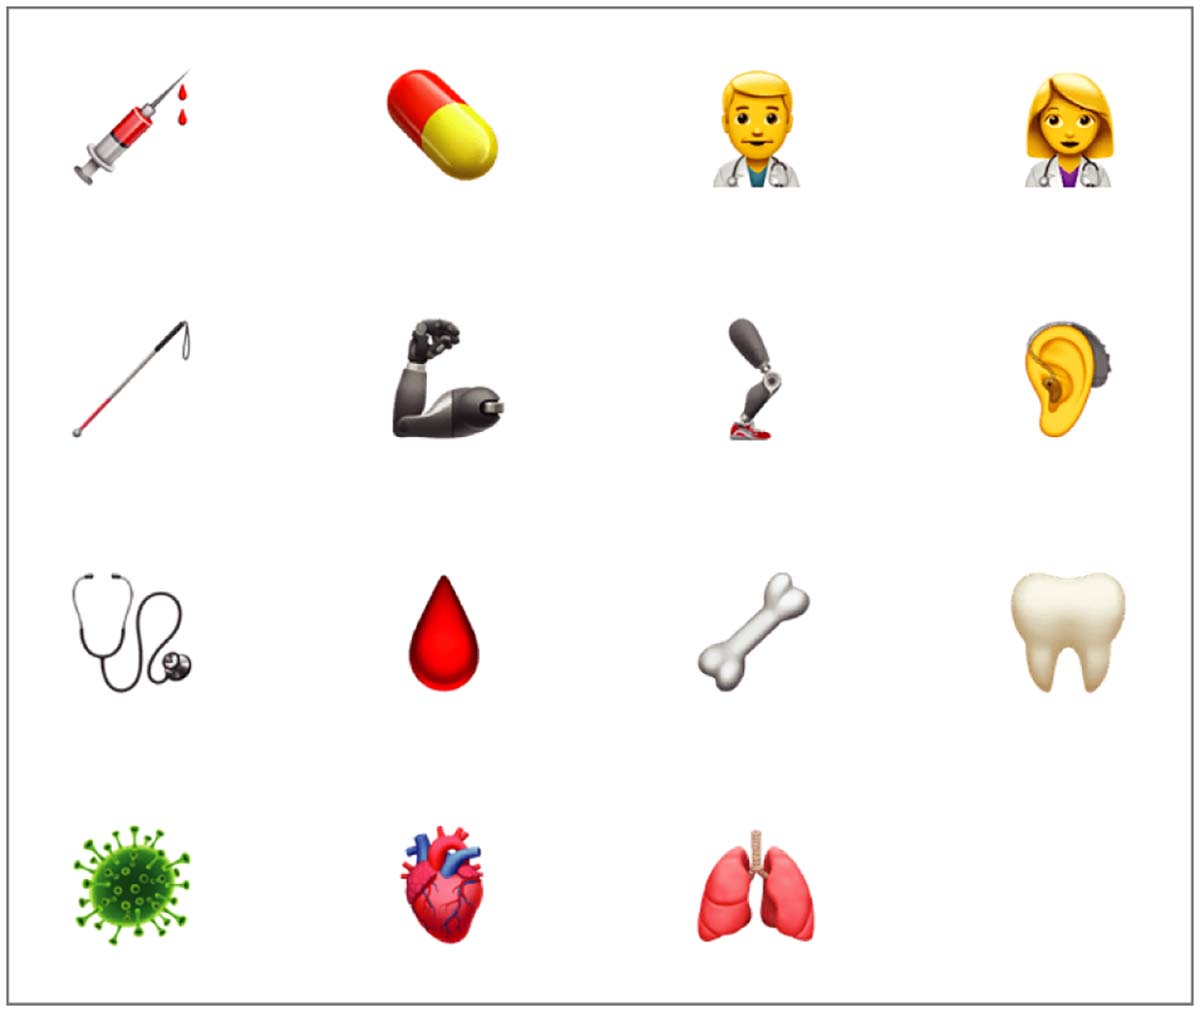 Secondo alcuni medici c’è bisogno di nuove emoji con organi del corpo umano